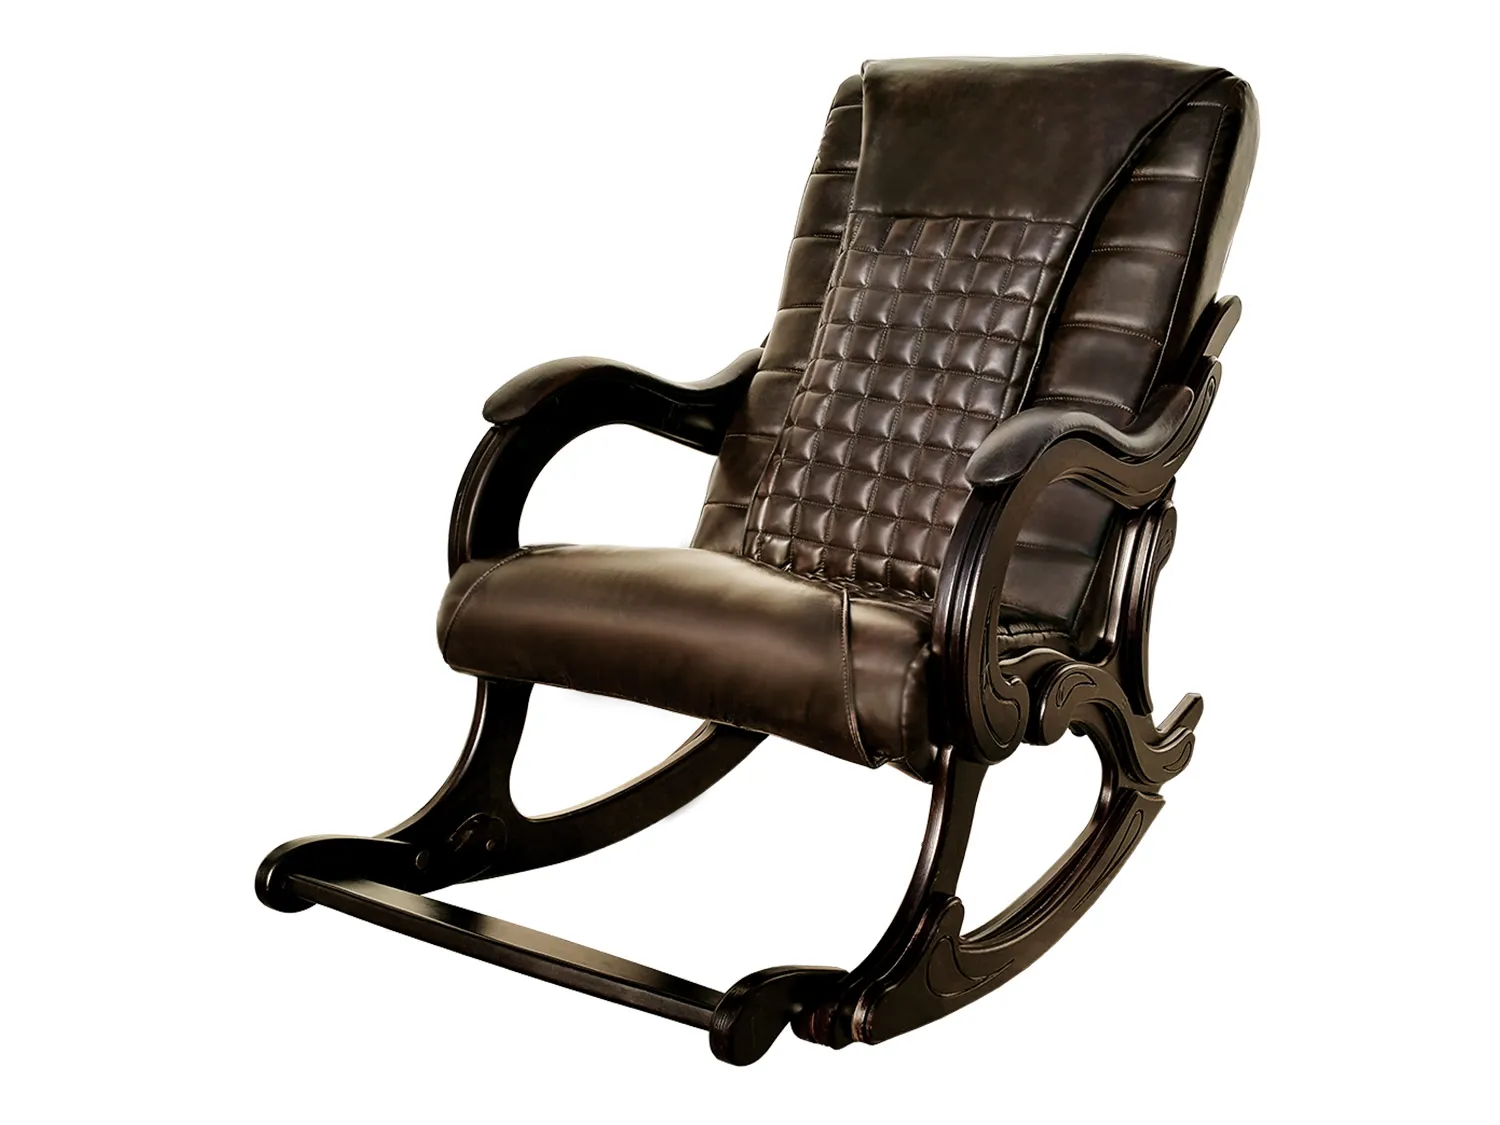 Массажное кресло качалка EGO WAVE EG2001F Шоколад (Арпатек)